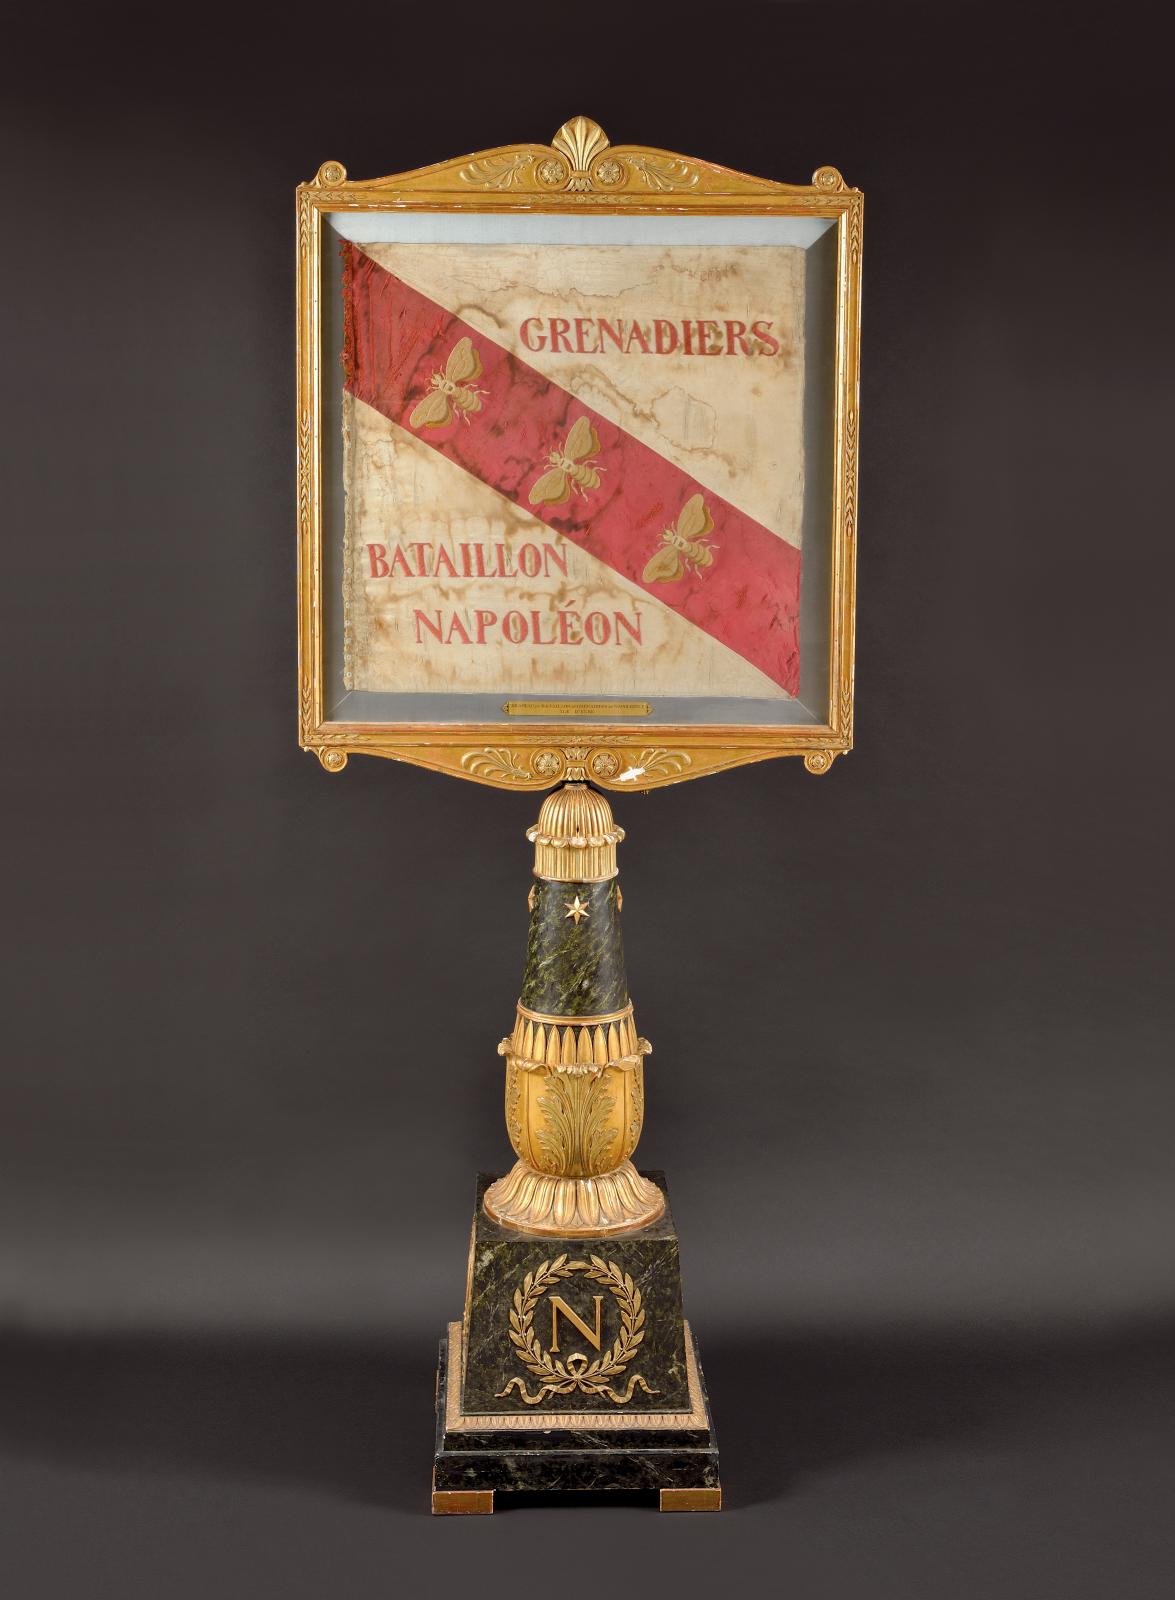 La Réunion des Musées nationaux préemptait ce drapeau des grenadiers du bataillon Napoléon à l’île d’Elbe, à hauteur de 47 500 €, pour le 